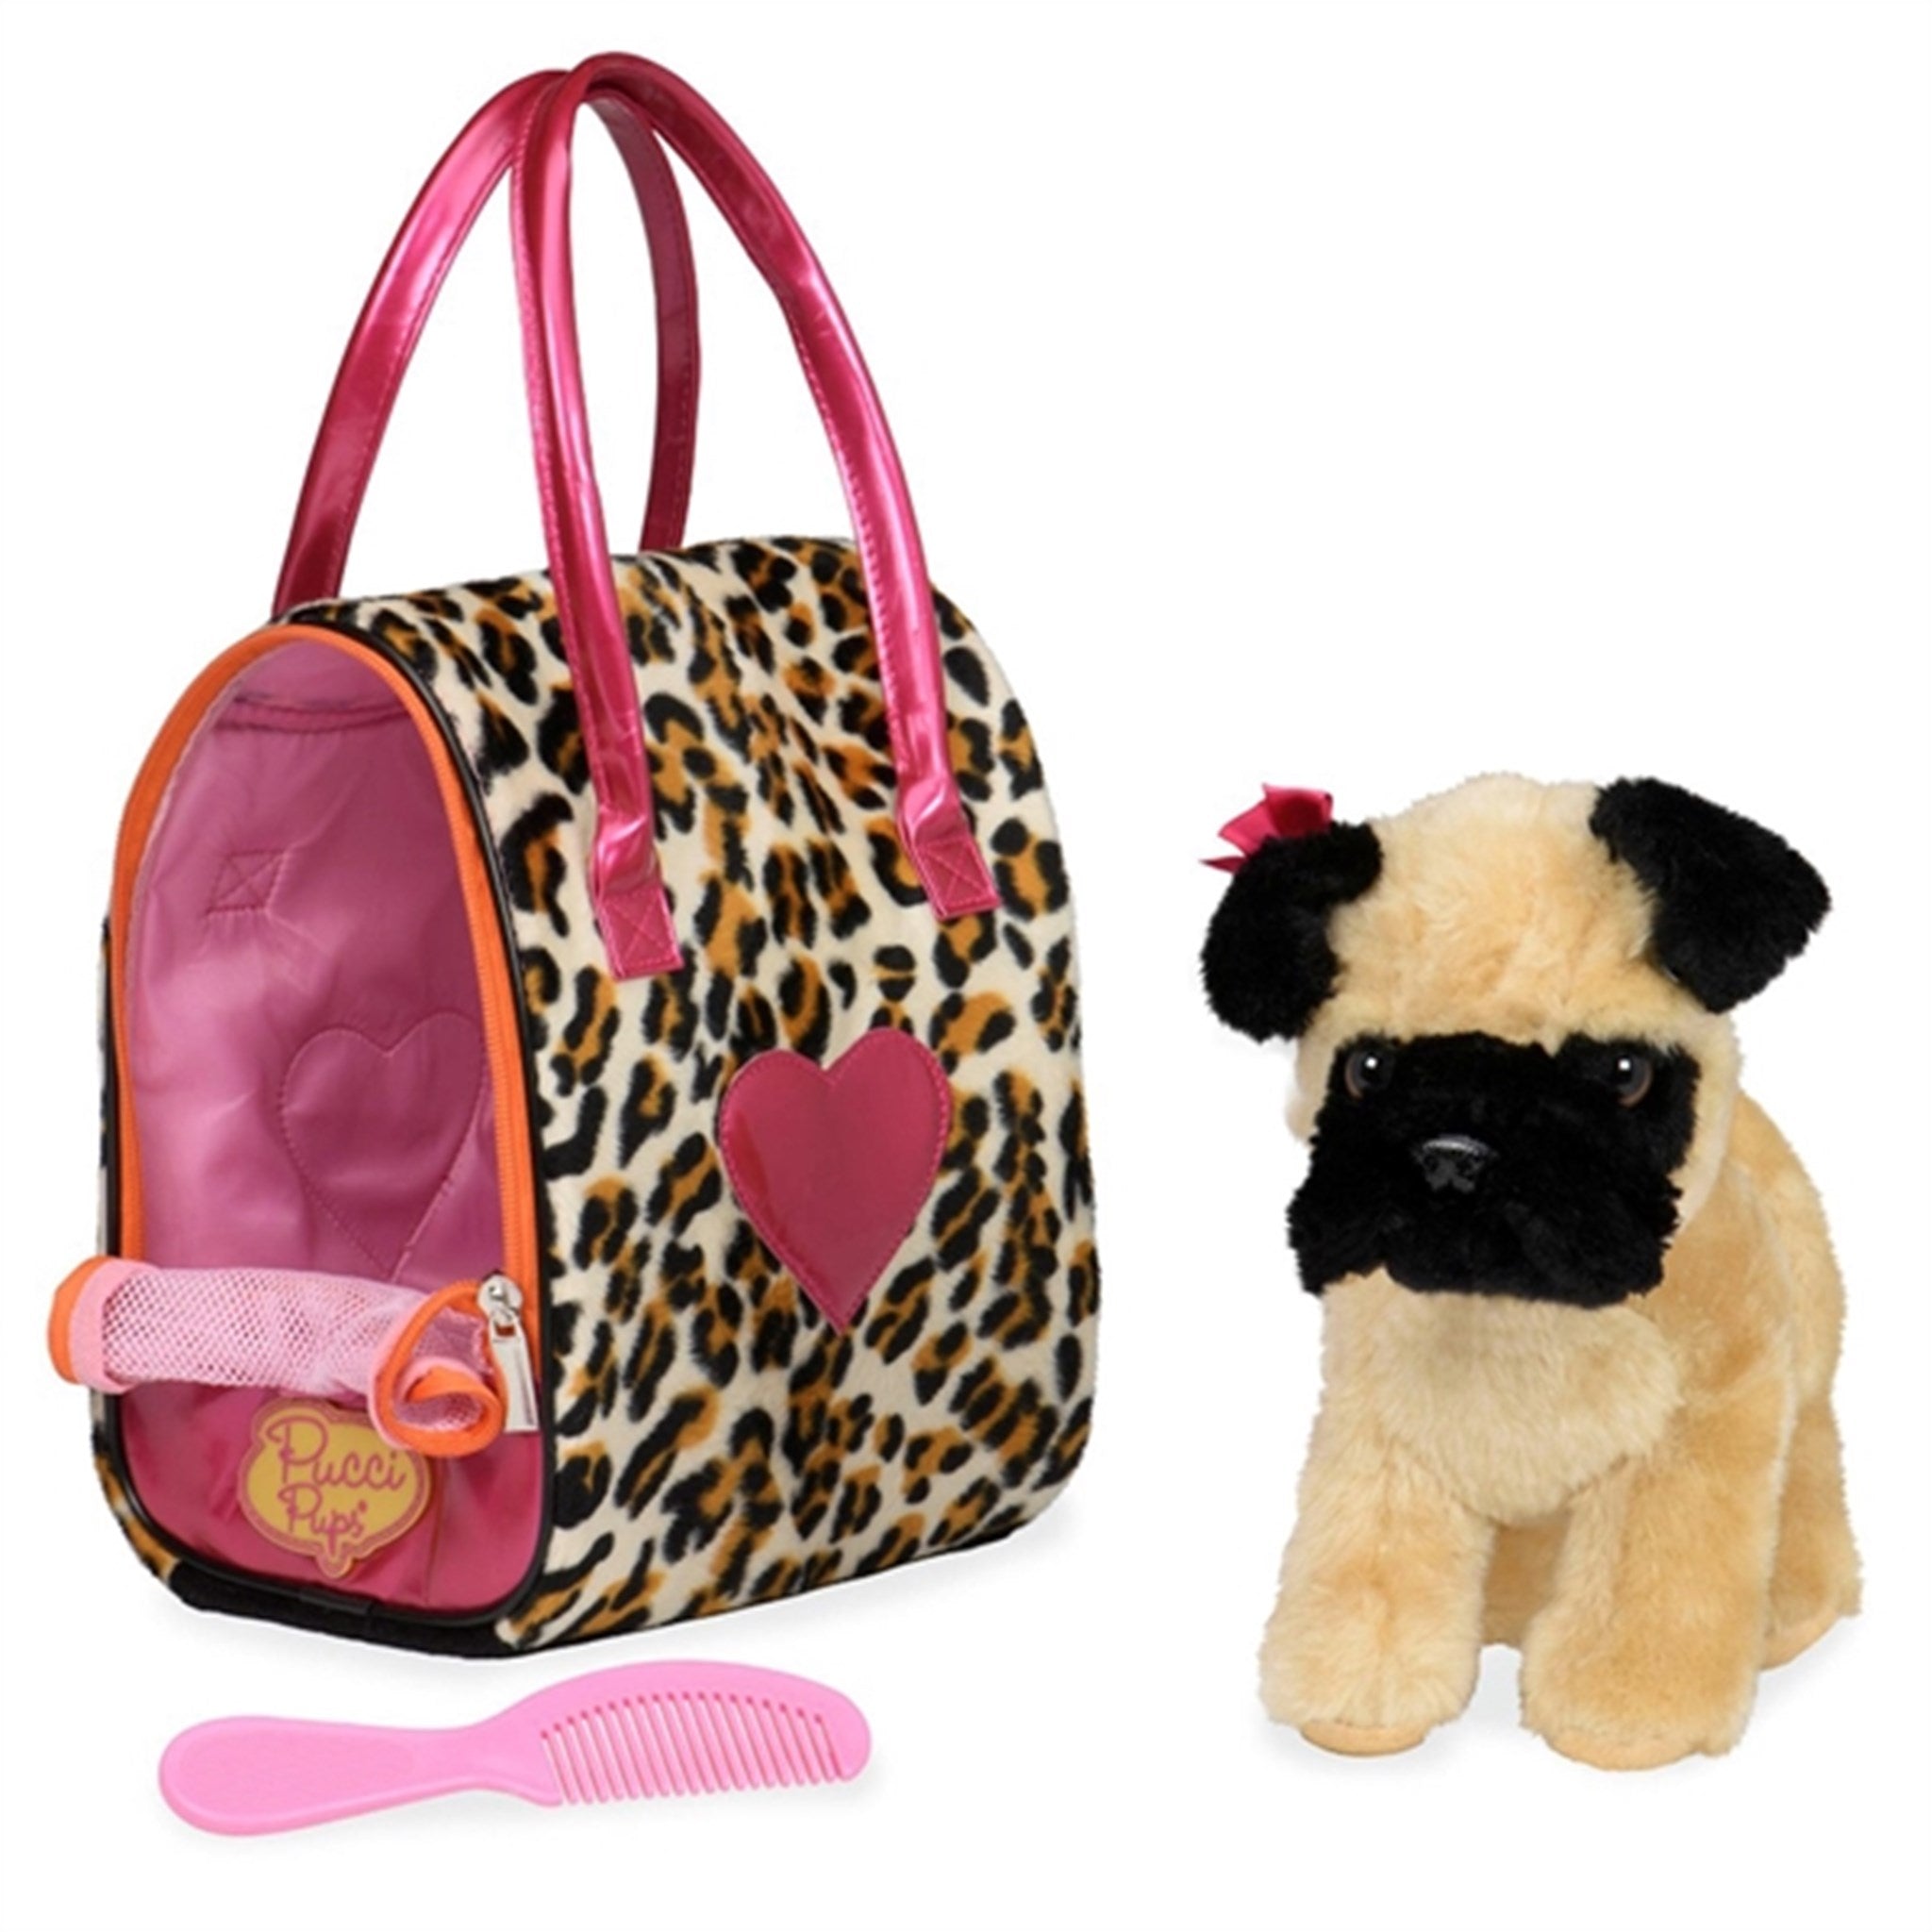 Pucci Pups Dog in Bag Leopard